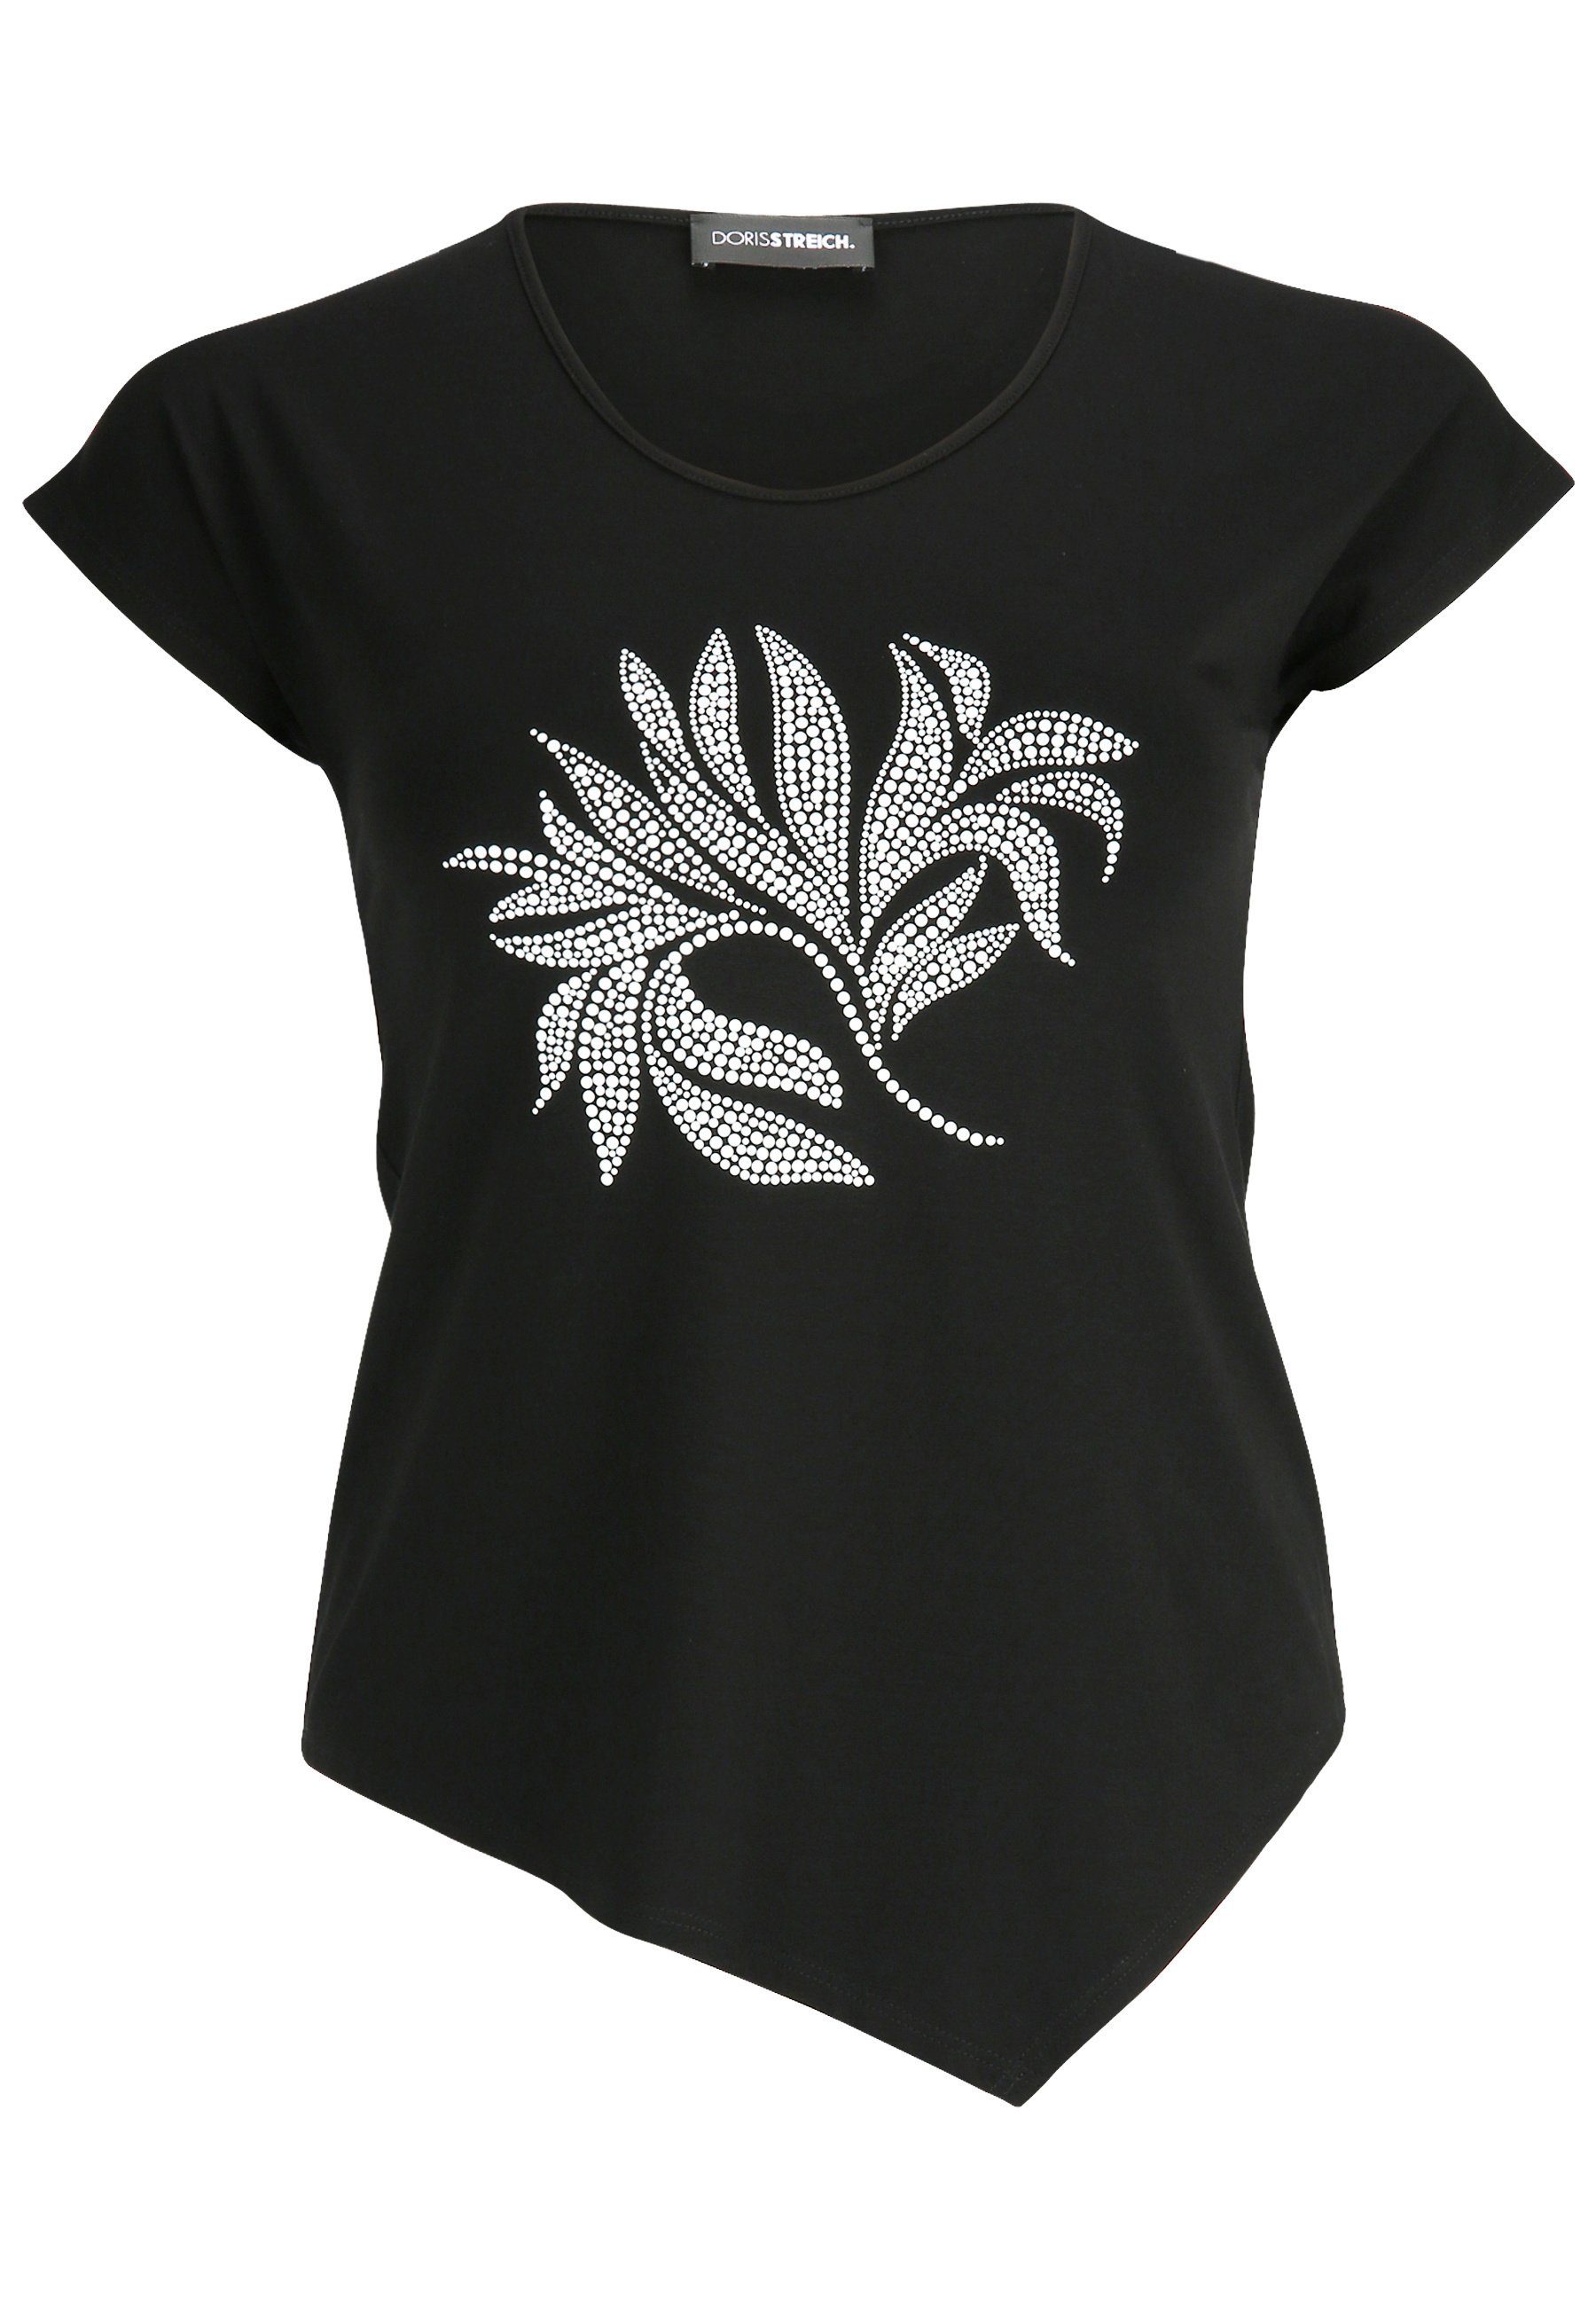 T-Shirt Streich mit Doris Blätter-Motiv